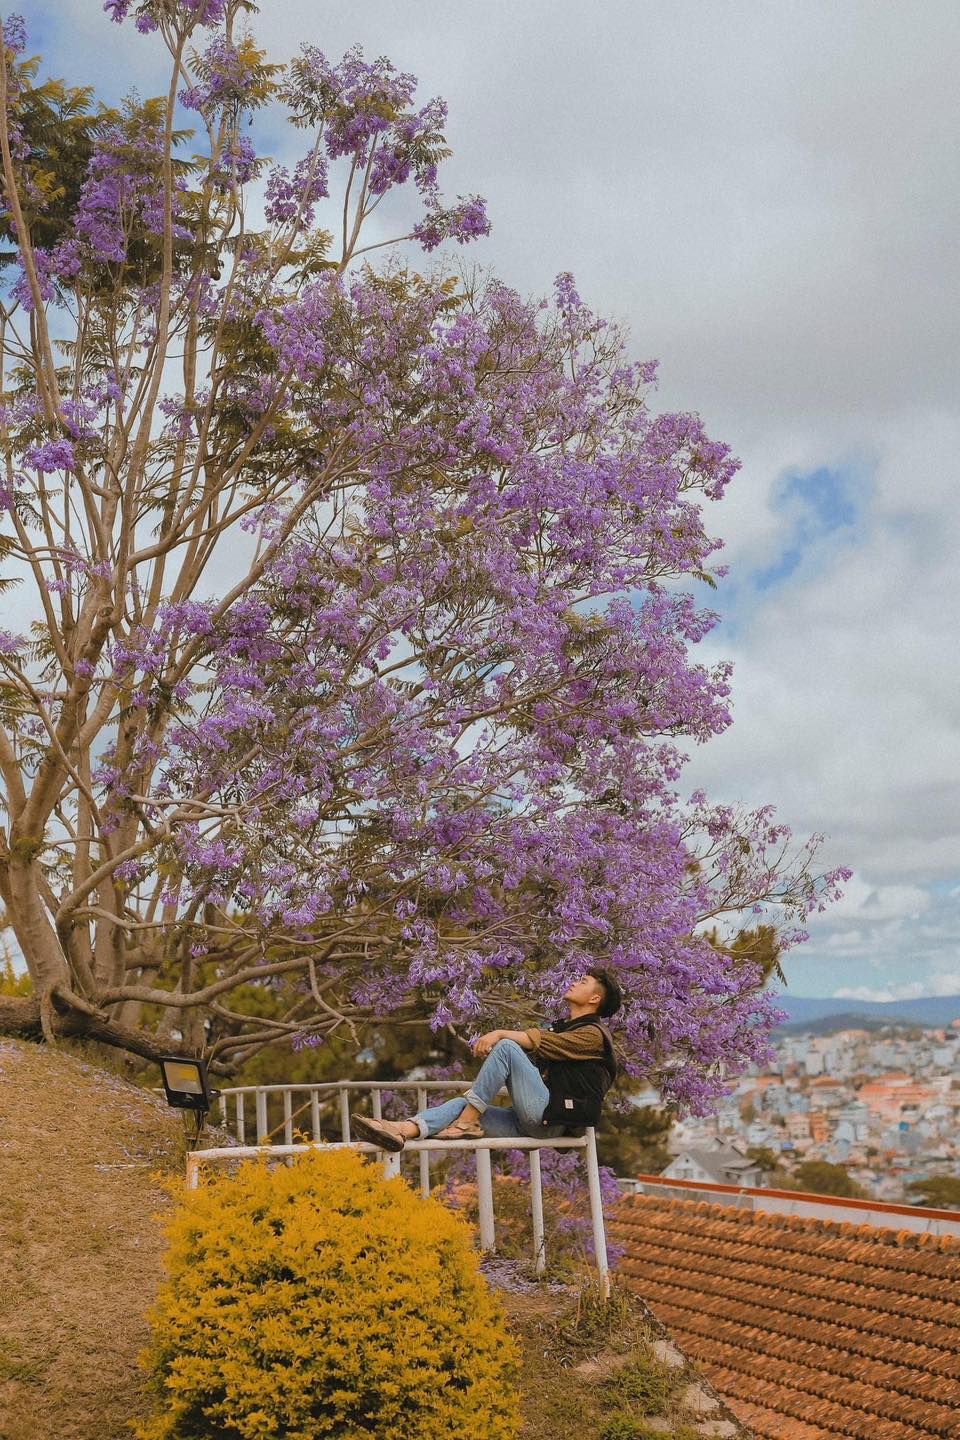 Vài ngày nay, hình ảnh những cây hoa phượng tím nở rộ khắp đường phố Đà Lạt khiến cộng đồng mạng lại lên kế hoạch đến phố núi check in cùng mùa hoa độc đáo này.